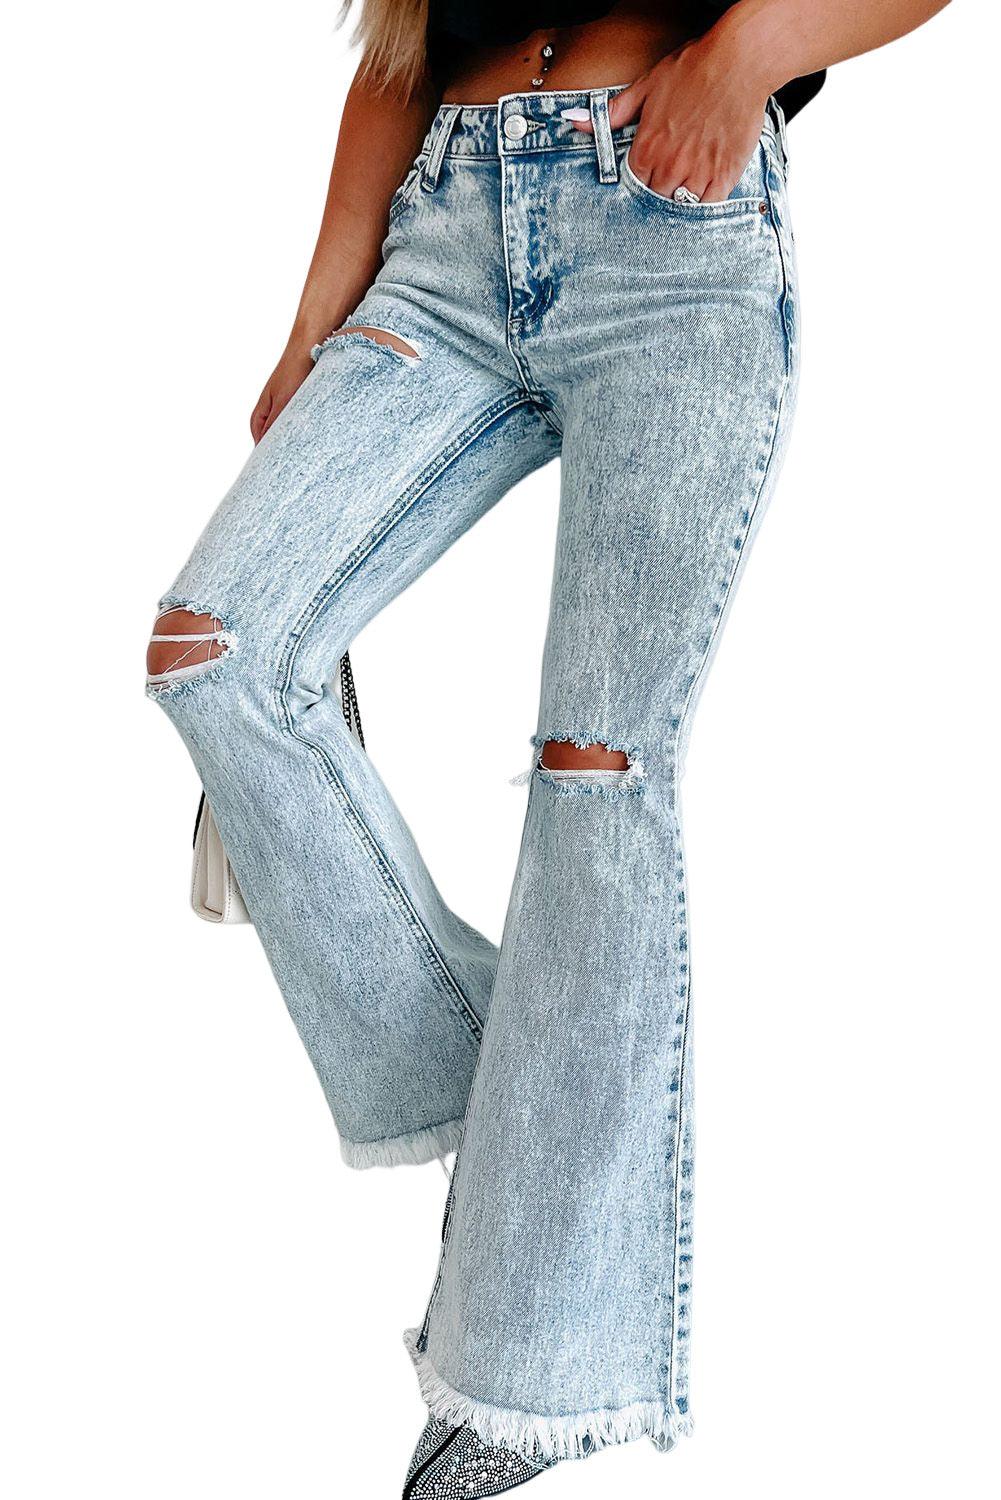 Distressed Acid Wash Flare Jeans - L & M Kee, LLC